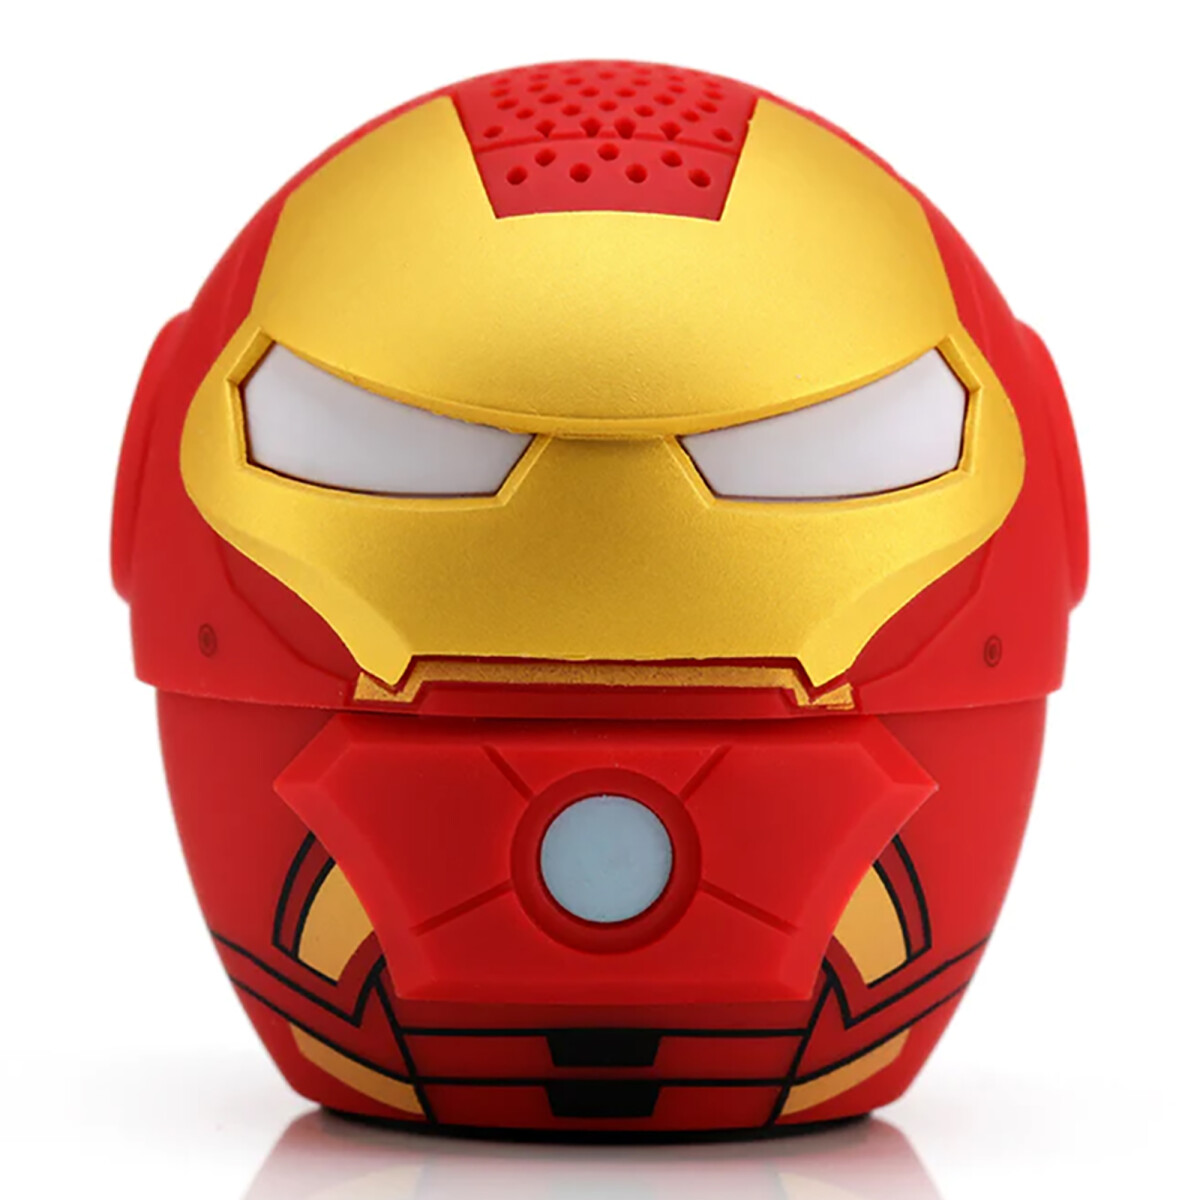 Bitty Boomers - Parlante Bluetooth Iron Man - Portátil. 4 Horas de Reproducción. Diseño Iron Man - 001 